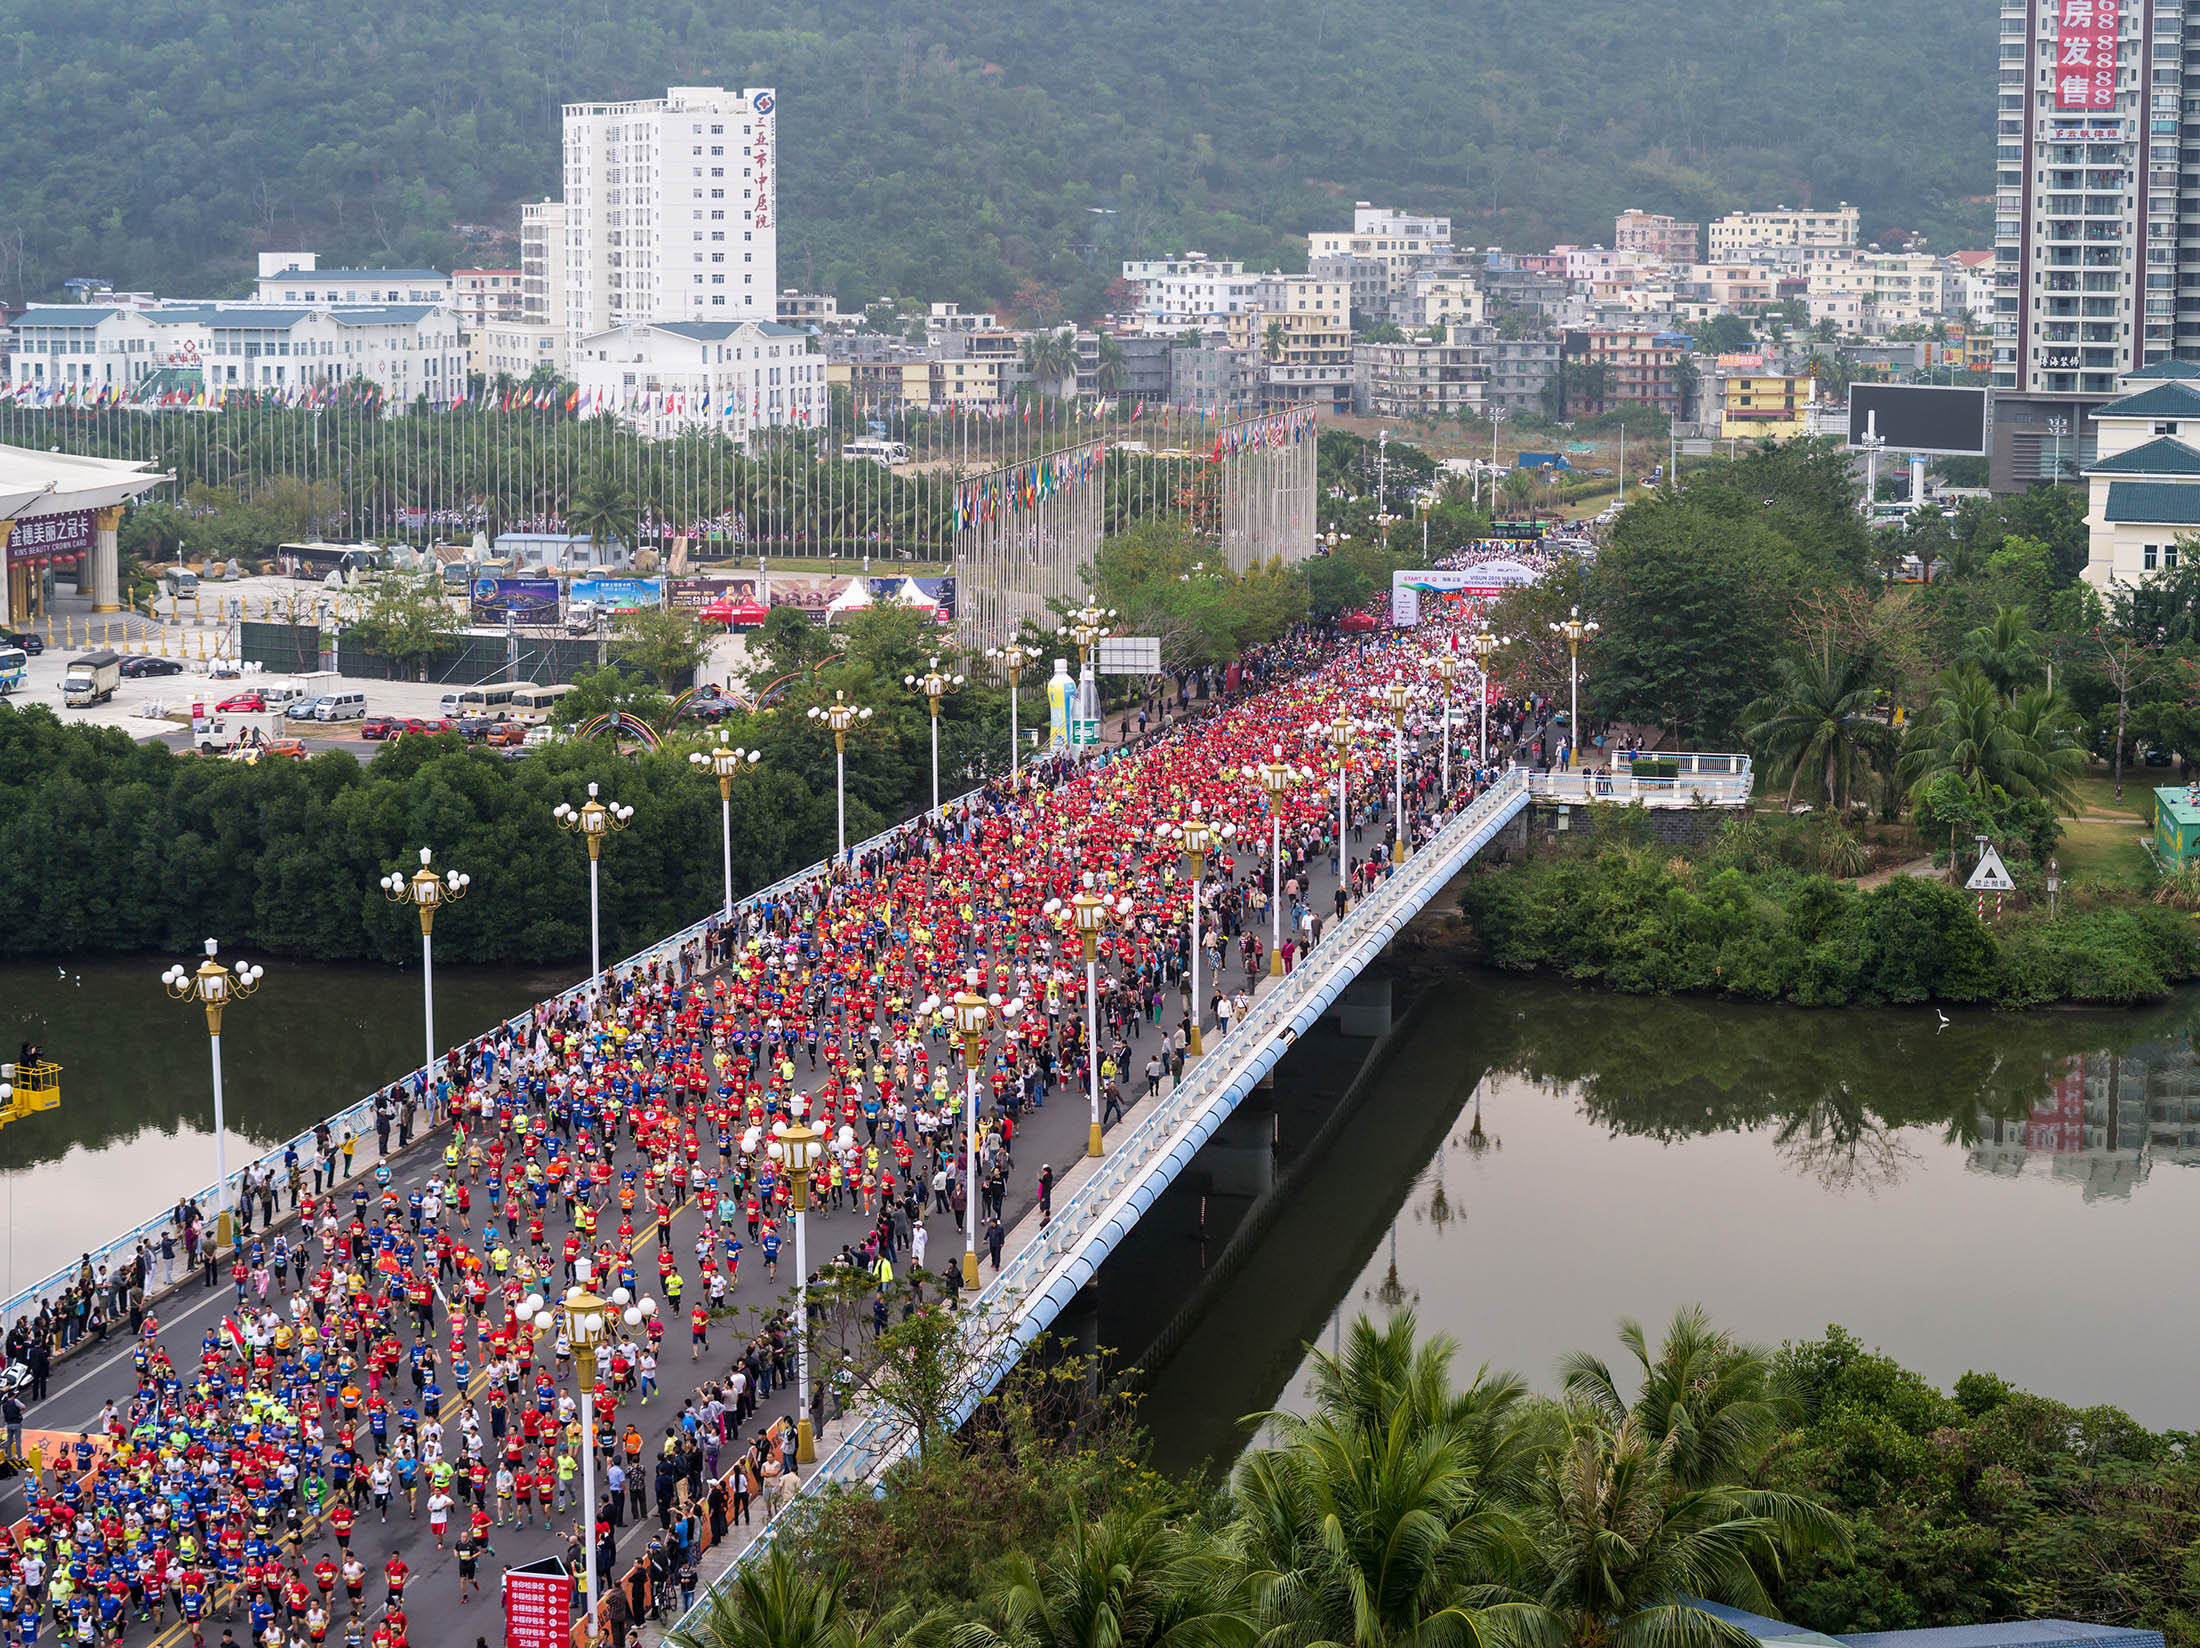 Người dân Trung Quốc tham gia chương trình chạy Marathon tại thành phố Tam Á, đảo Hải Nam, Trung Quốc tháng 2/2016. Ngày càng có nhiều người Trung Quốc tham gia thể thao và hoạt động rèn luyện sức khỏe. Ảnh: Getty Images